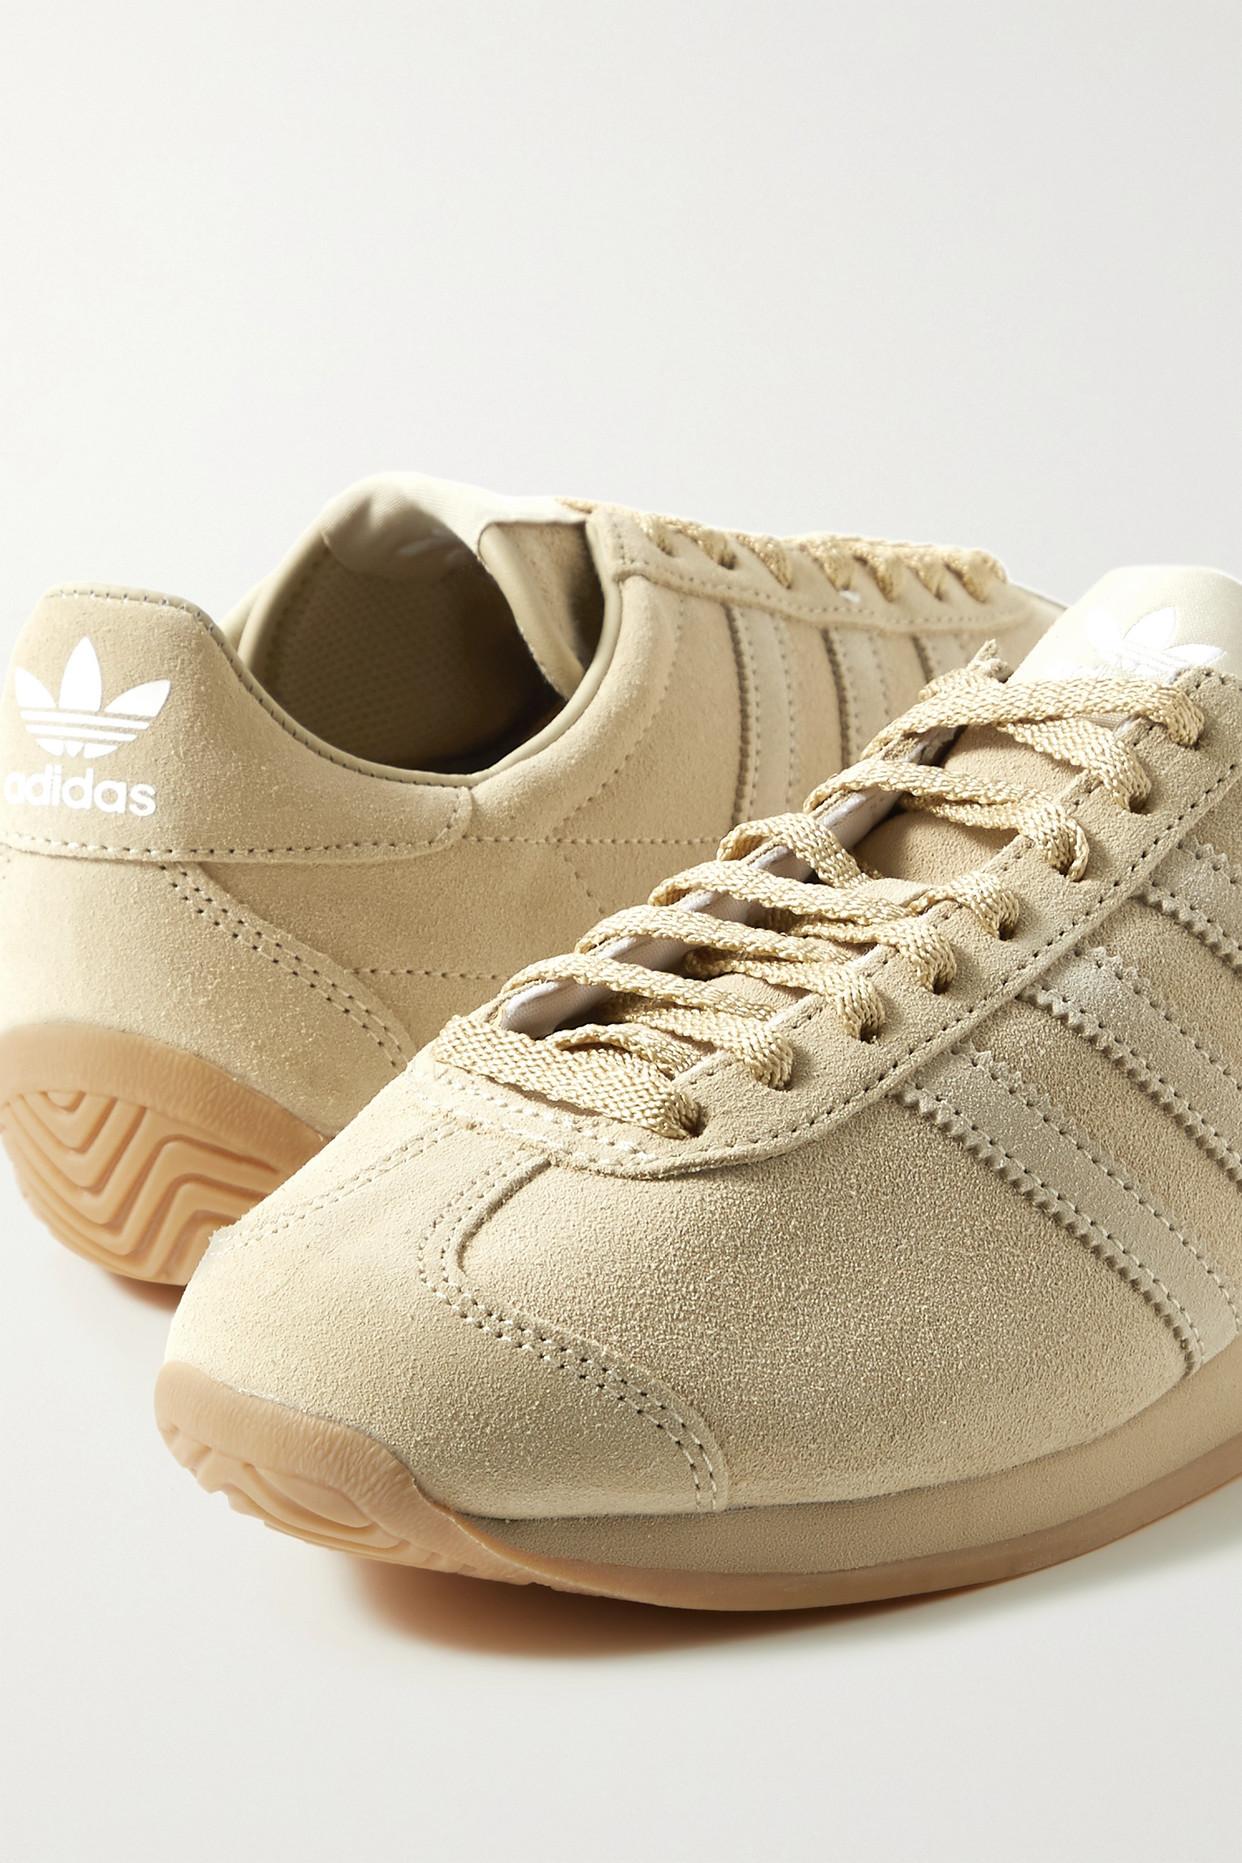 Khaite + Adidas Originals Suede Sneakers | Lyst